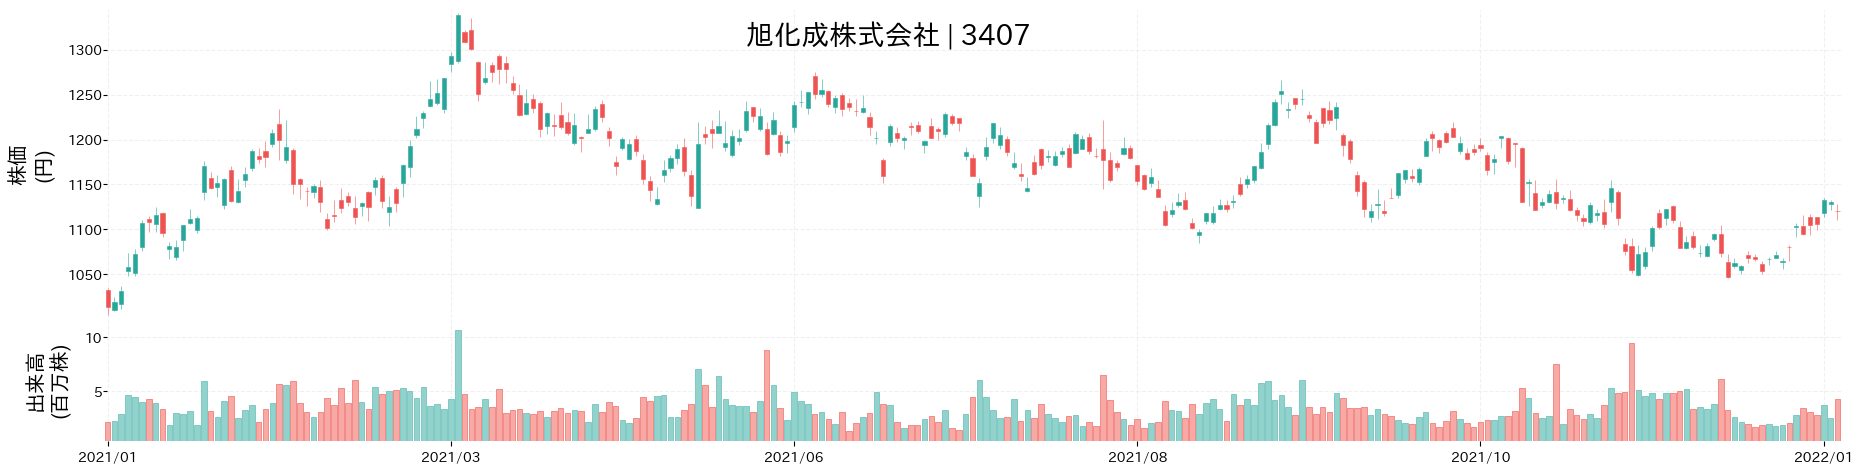 旭化成の株価推移(2021)